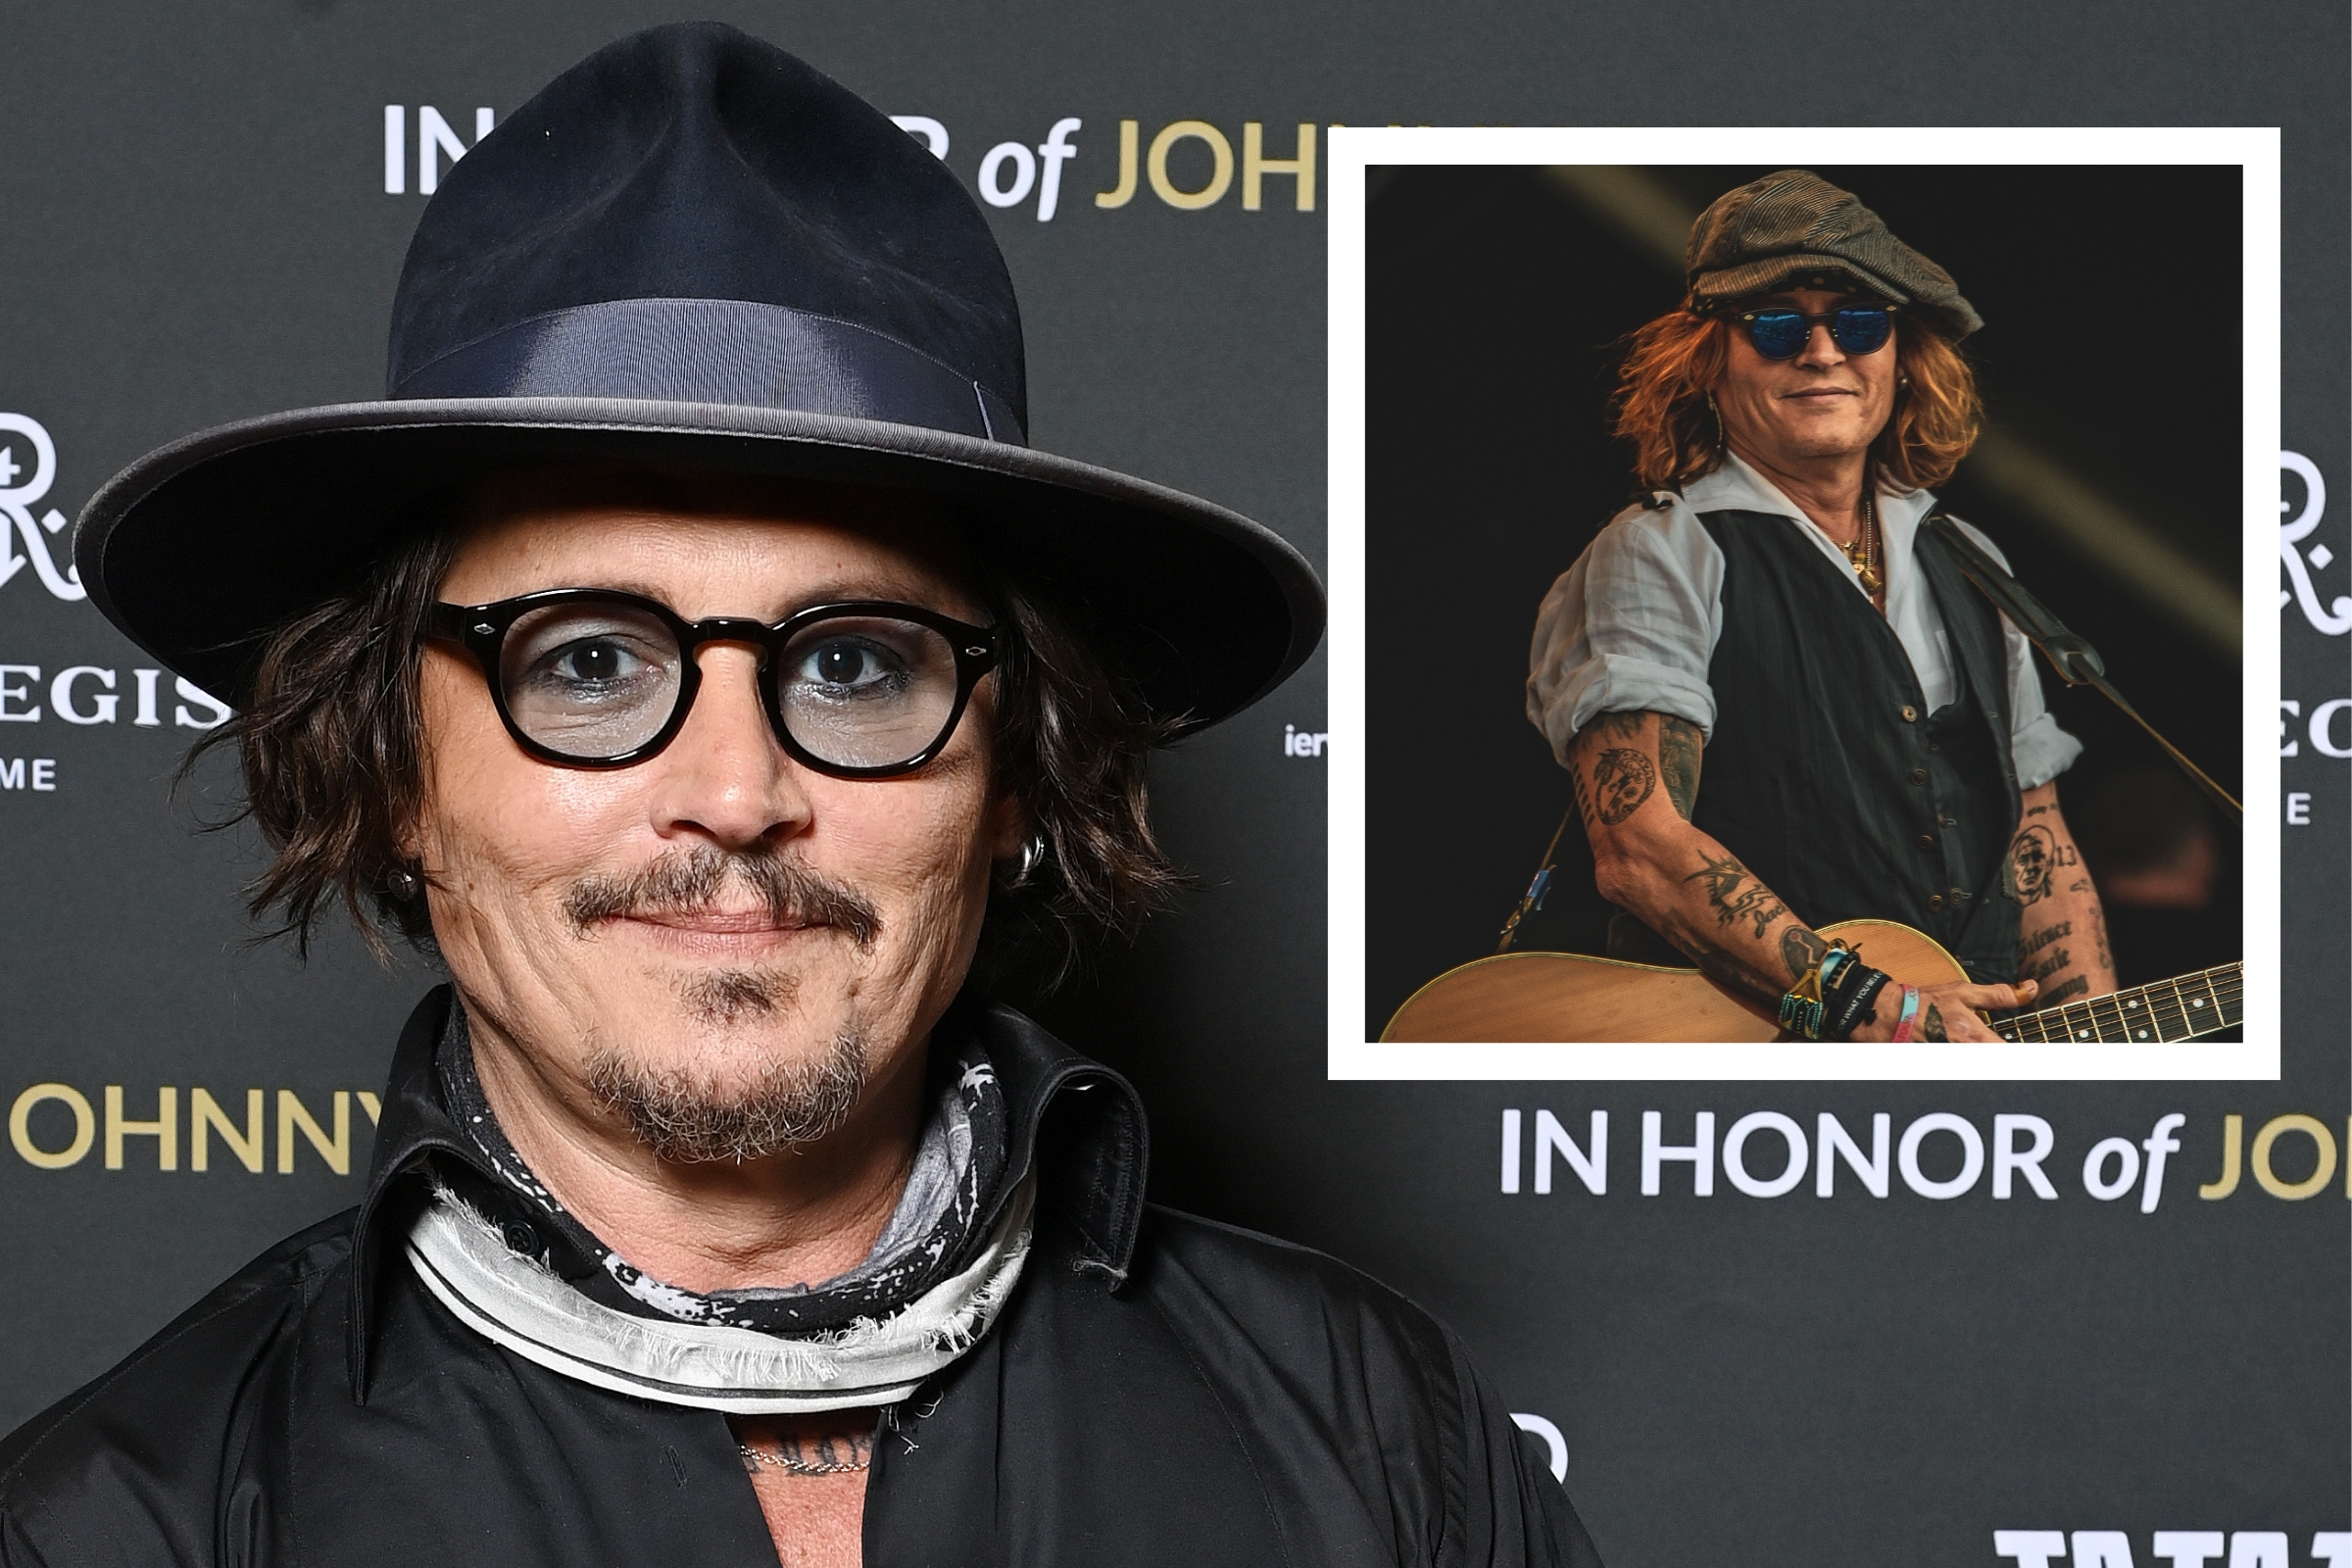 Nước hoa được Johnny Depp quảng cáo gây tranh cãi  Giải trí  ZINGNEWSVN